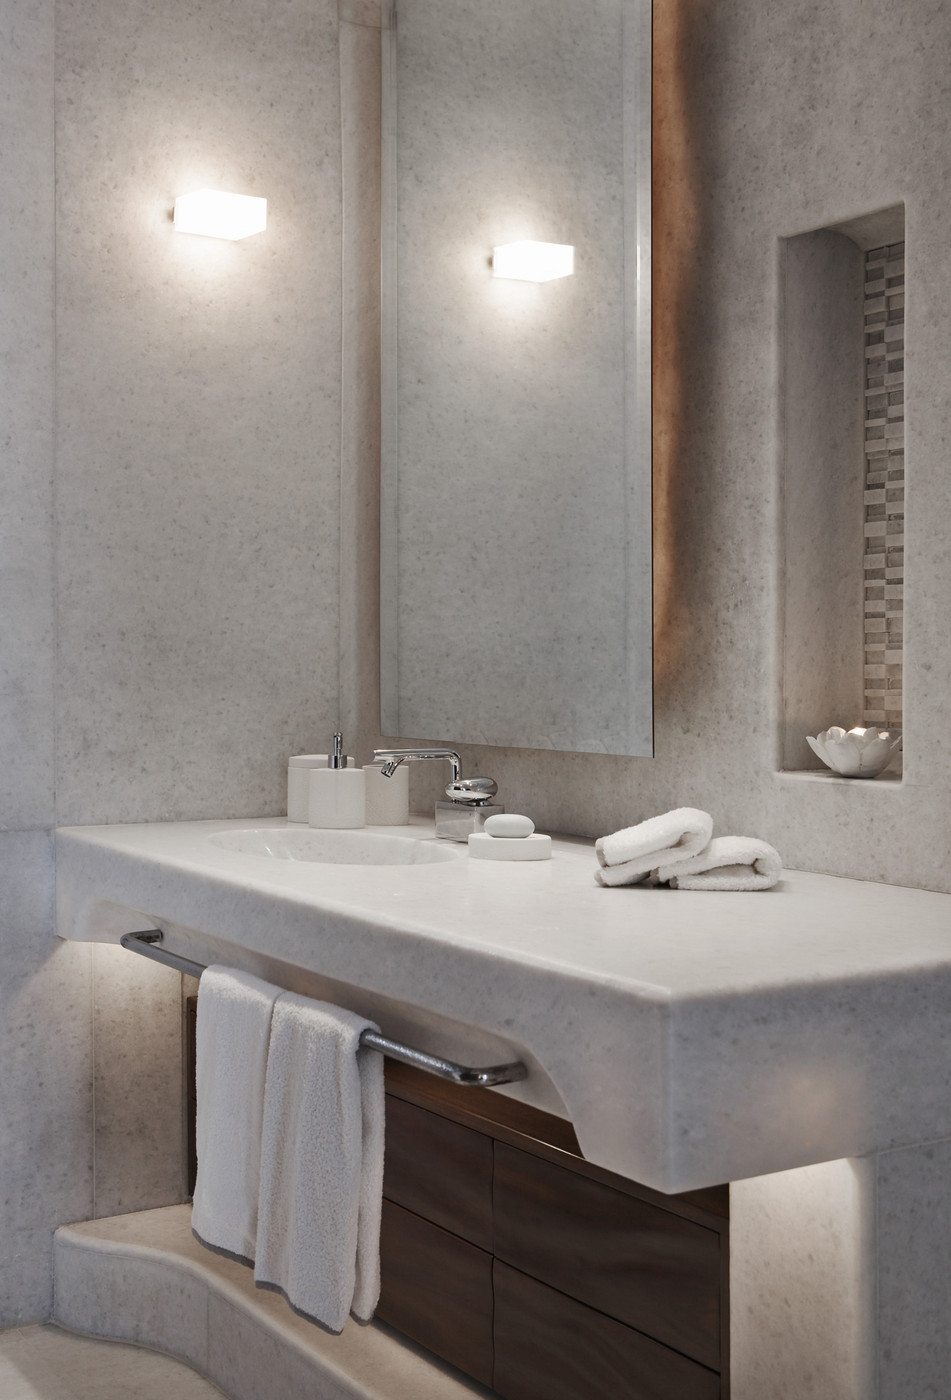 Luxury Look Of High End Bathroom Vanities, High End Vanity